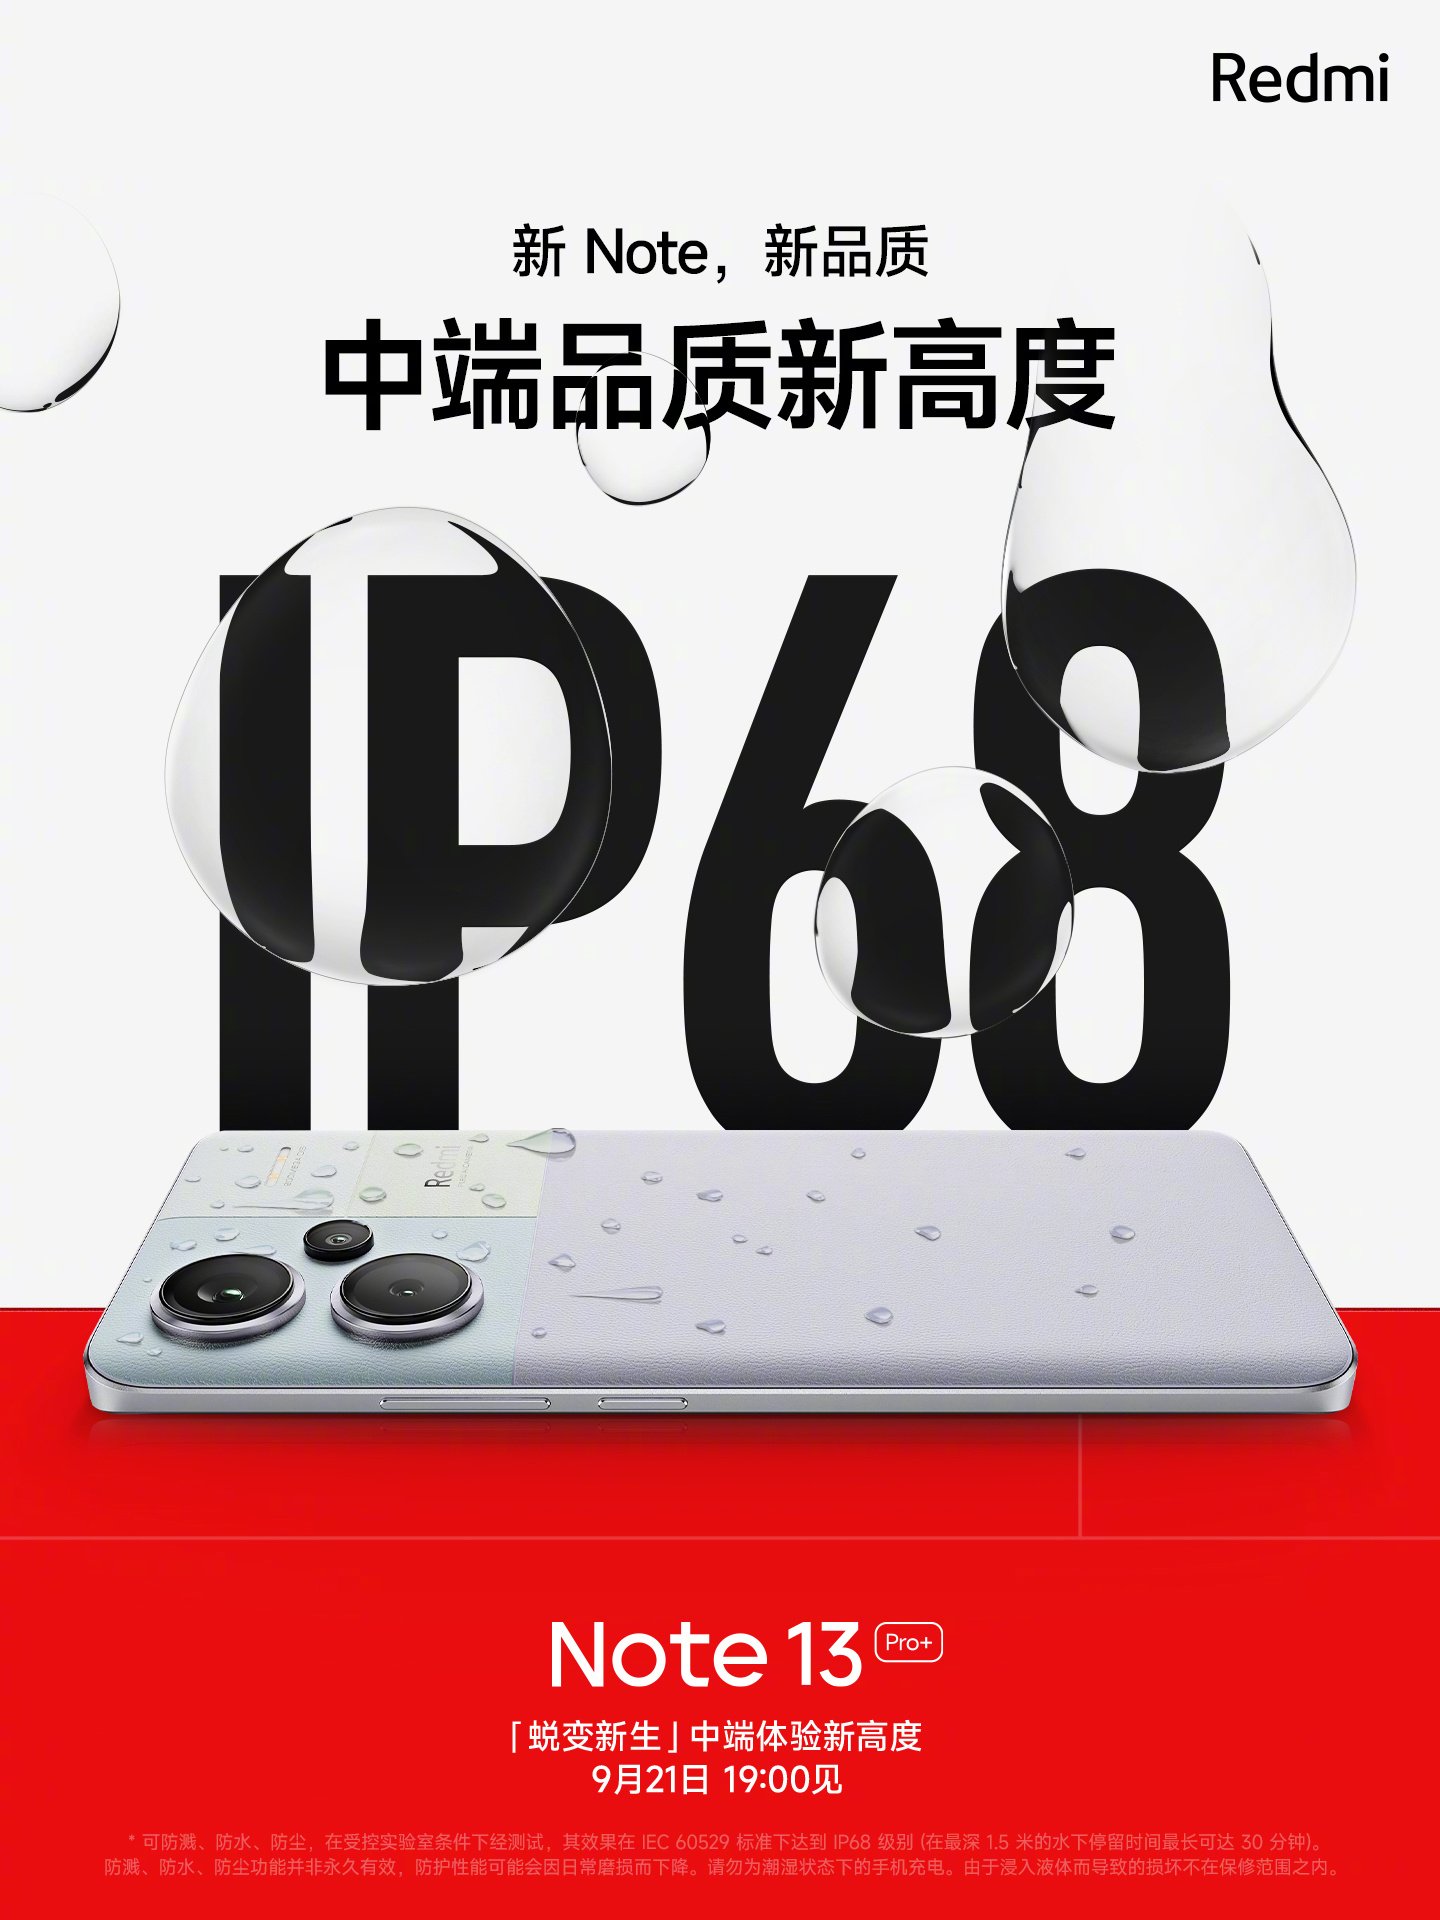 Ya es oficial: El Redmi Note 13 Pro+ tendrá protección IP68 contra el agua